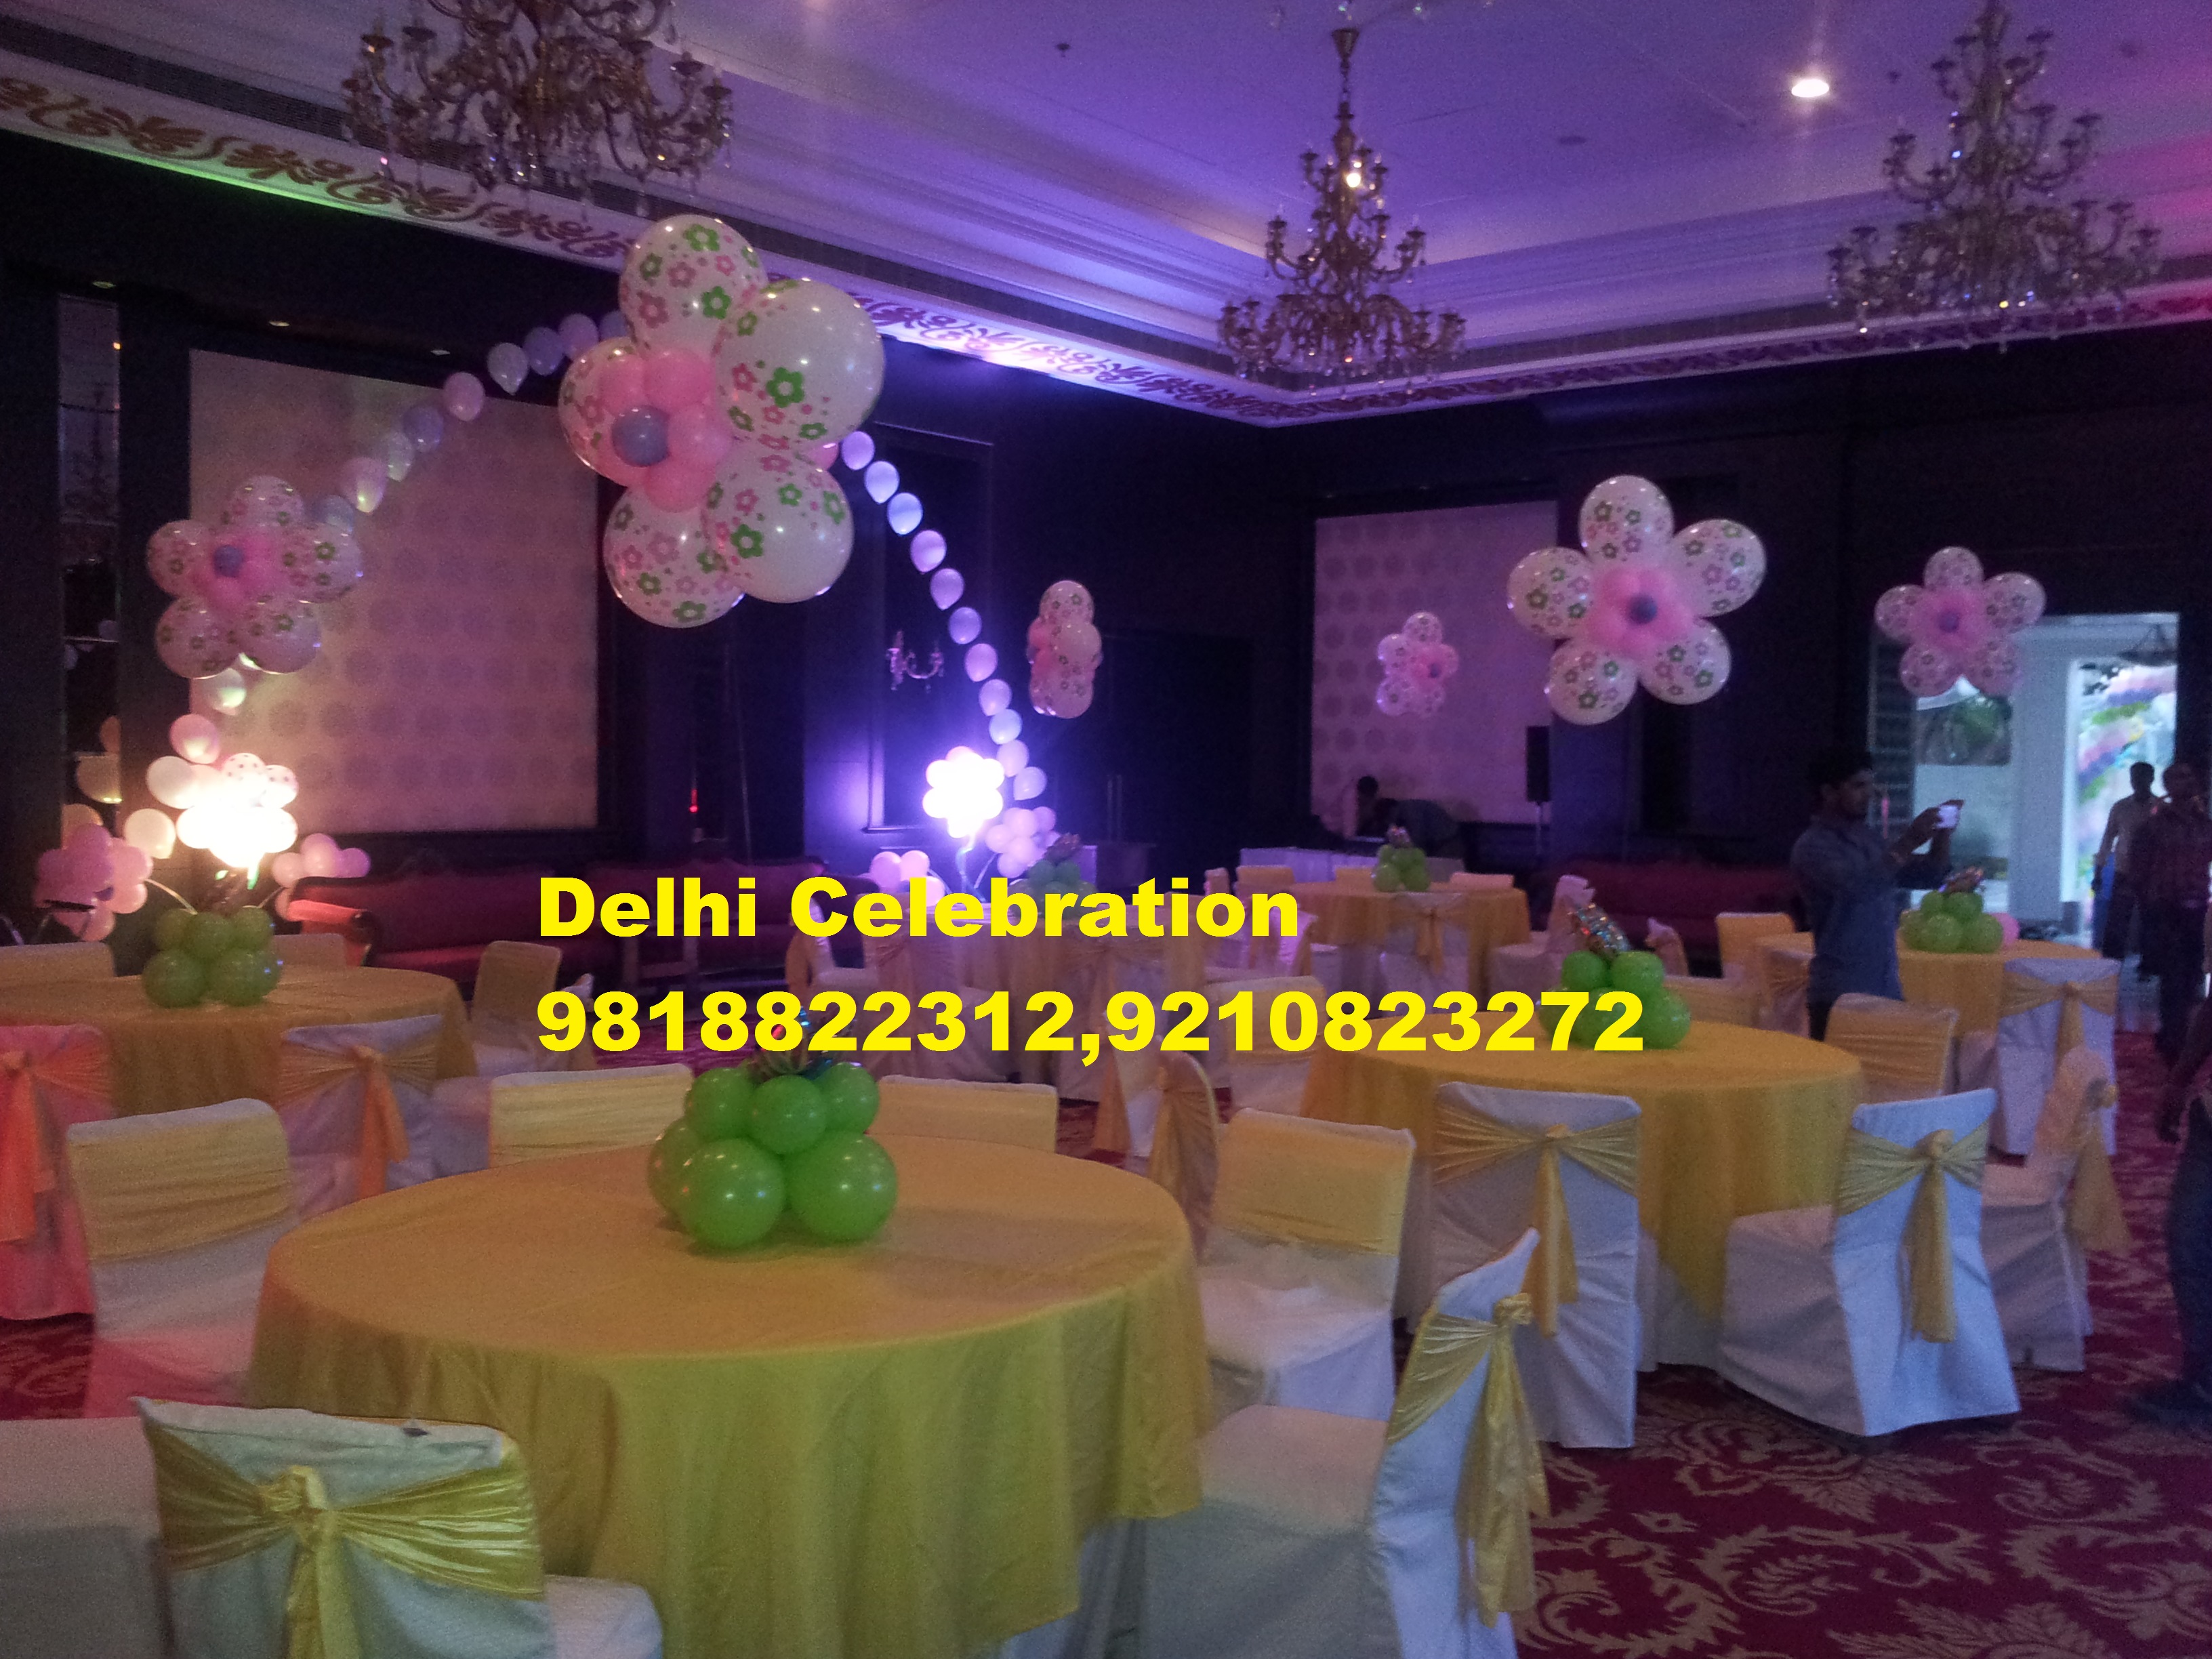 Delhi Celebration 91 98188 22312 Delhi Celebration 